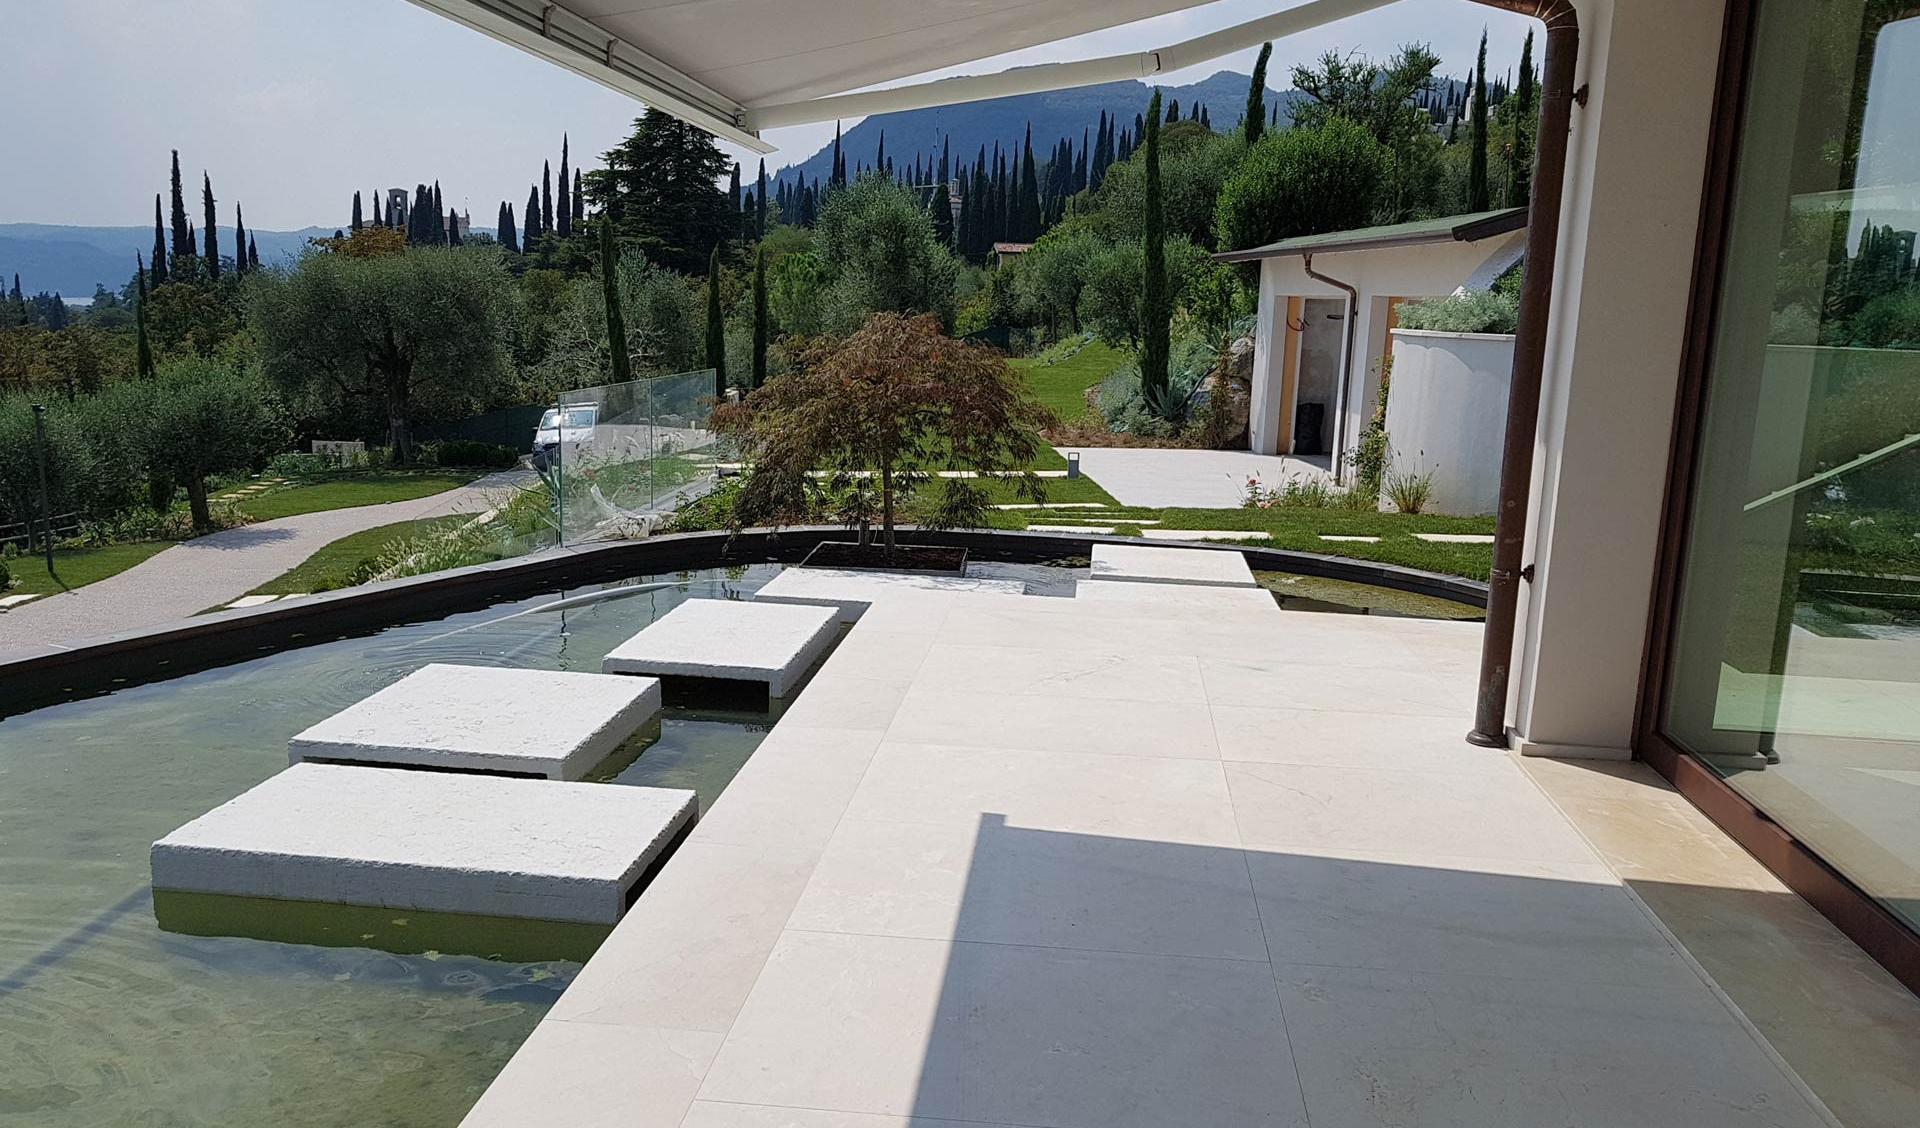 Villa in locality Traina Gardone Riviera